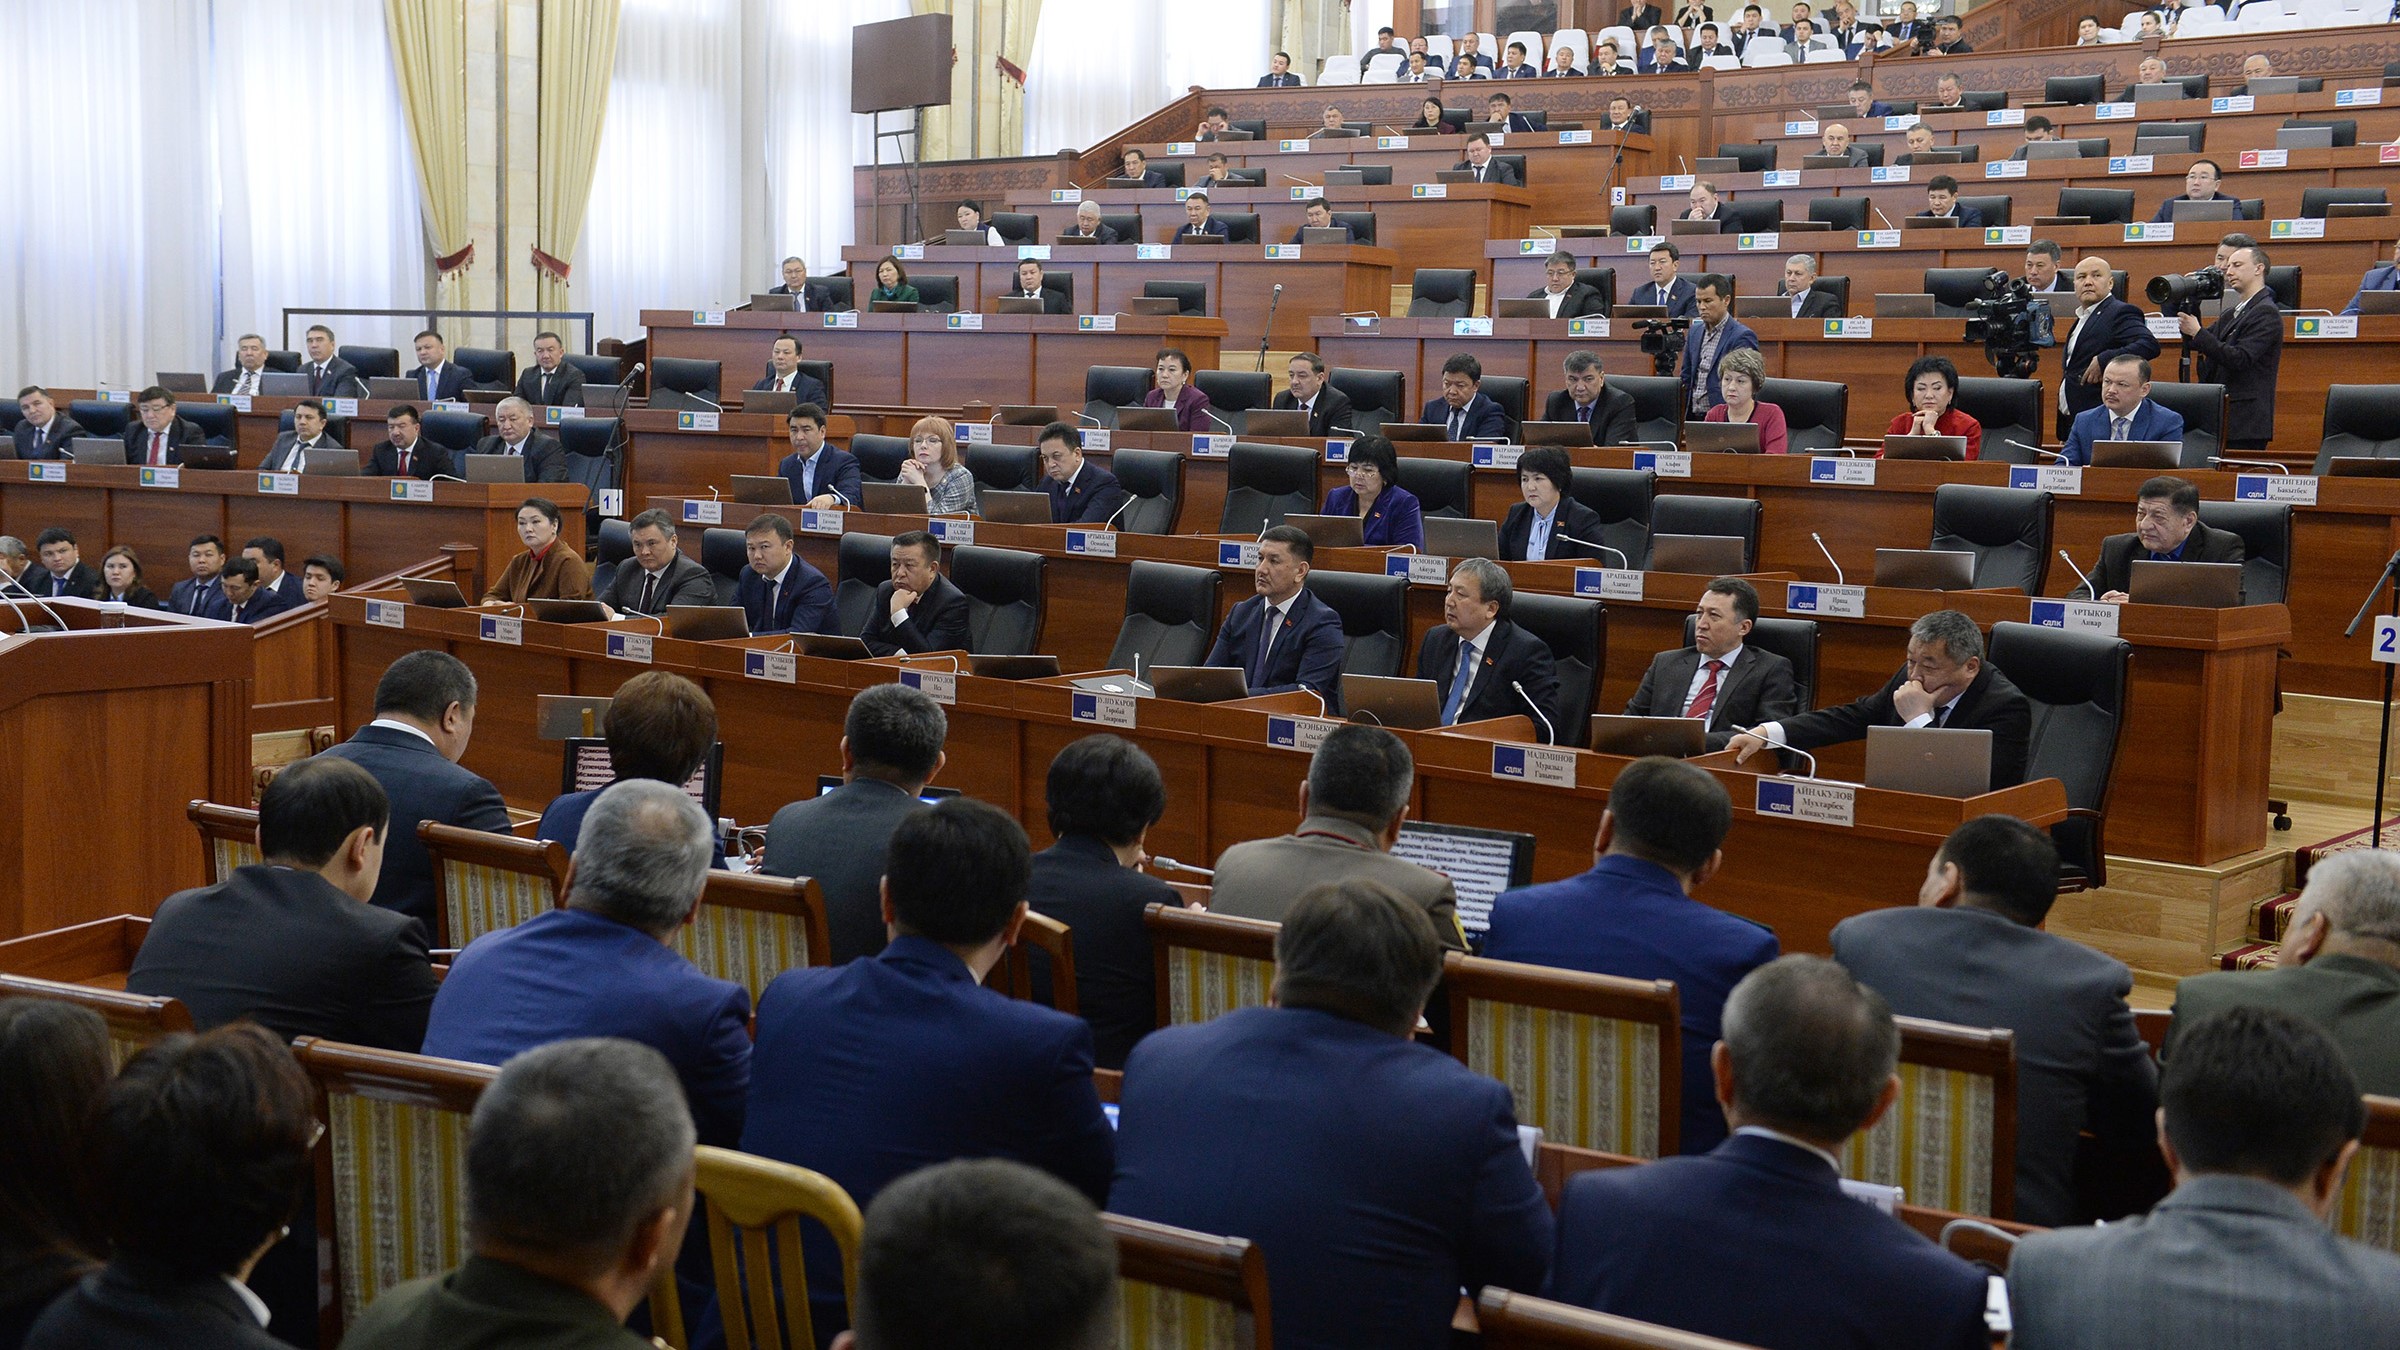 Парламент одобрил в третьем чтении законопроект, ограничивающий деятельность НКО. Последнее слово за президентом